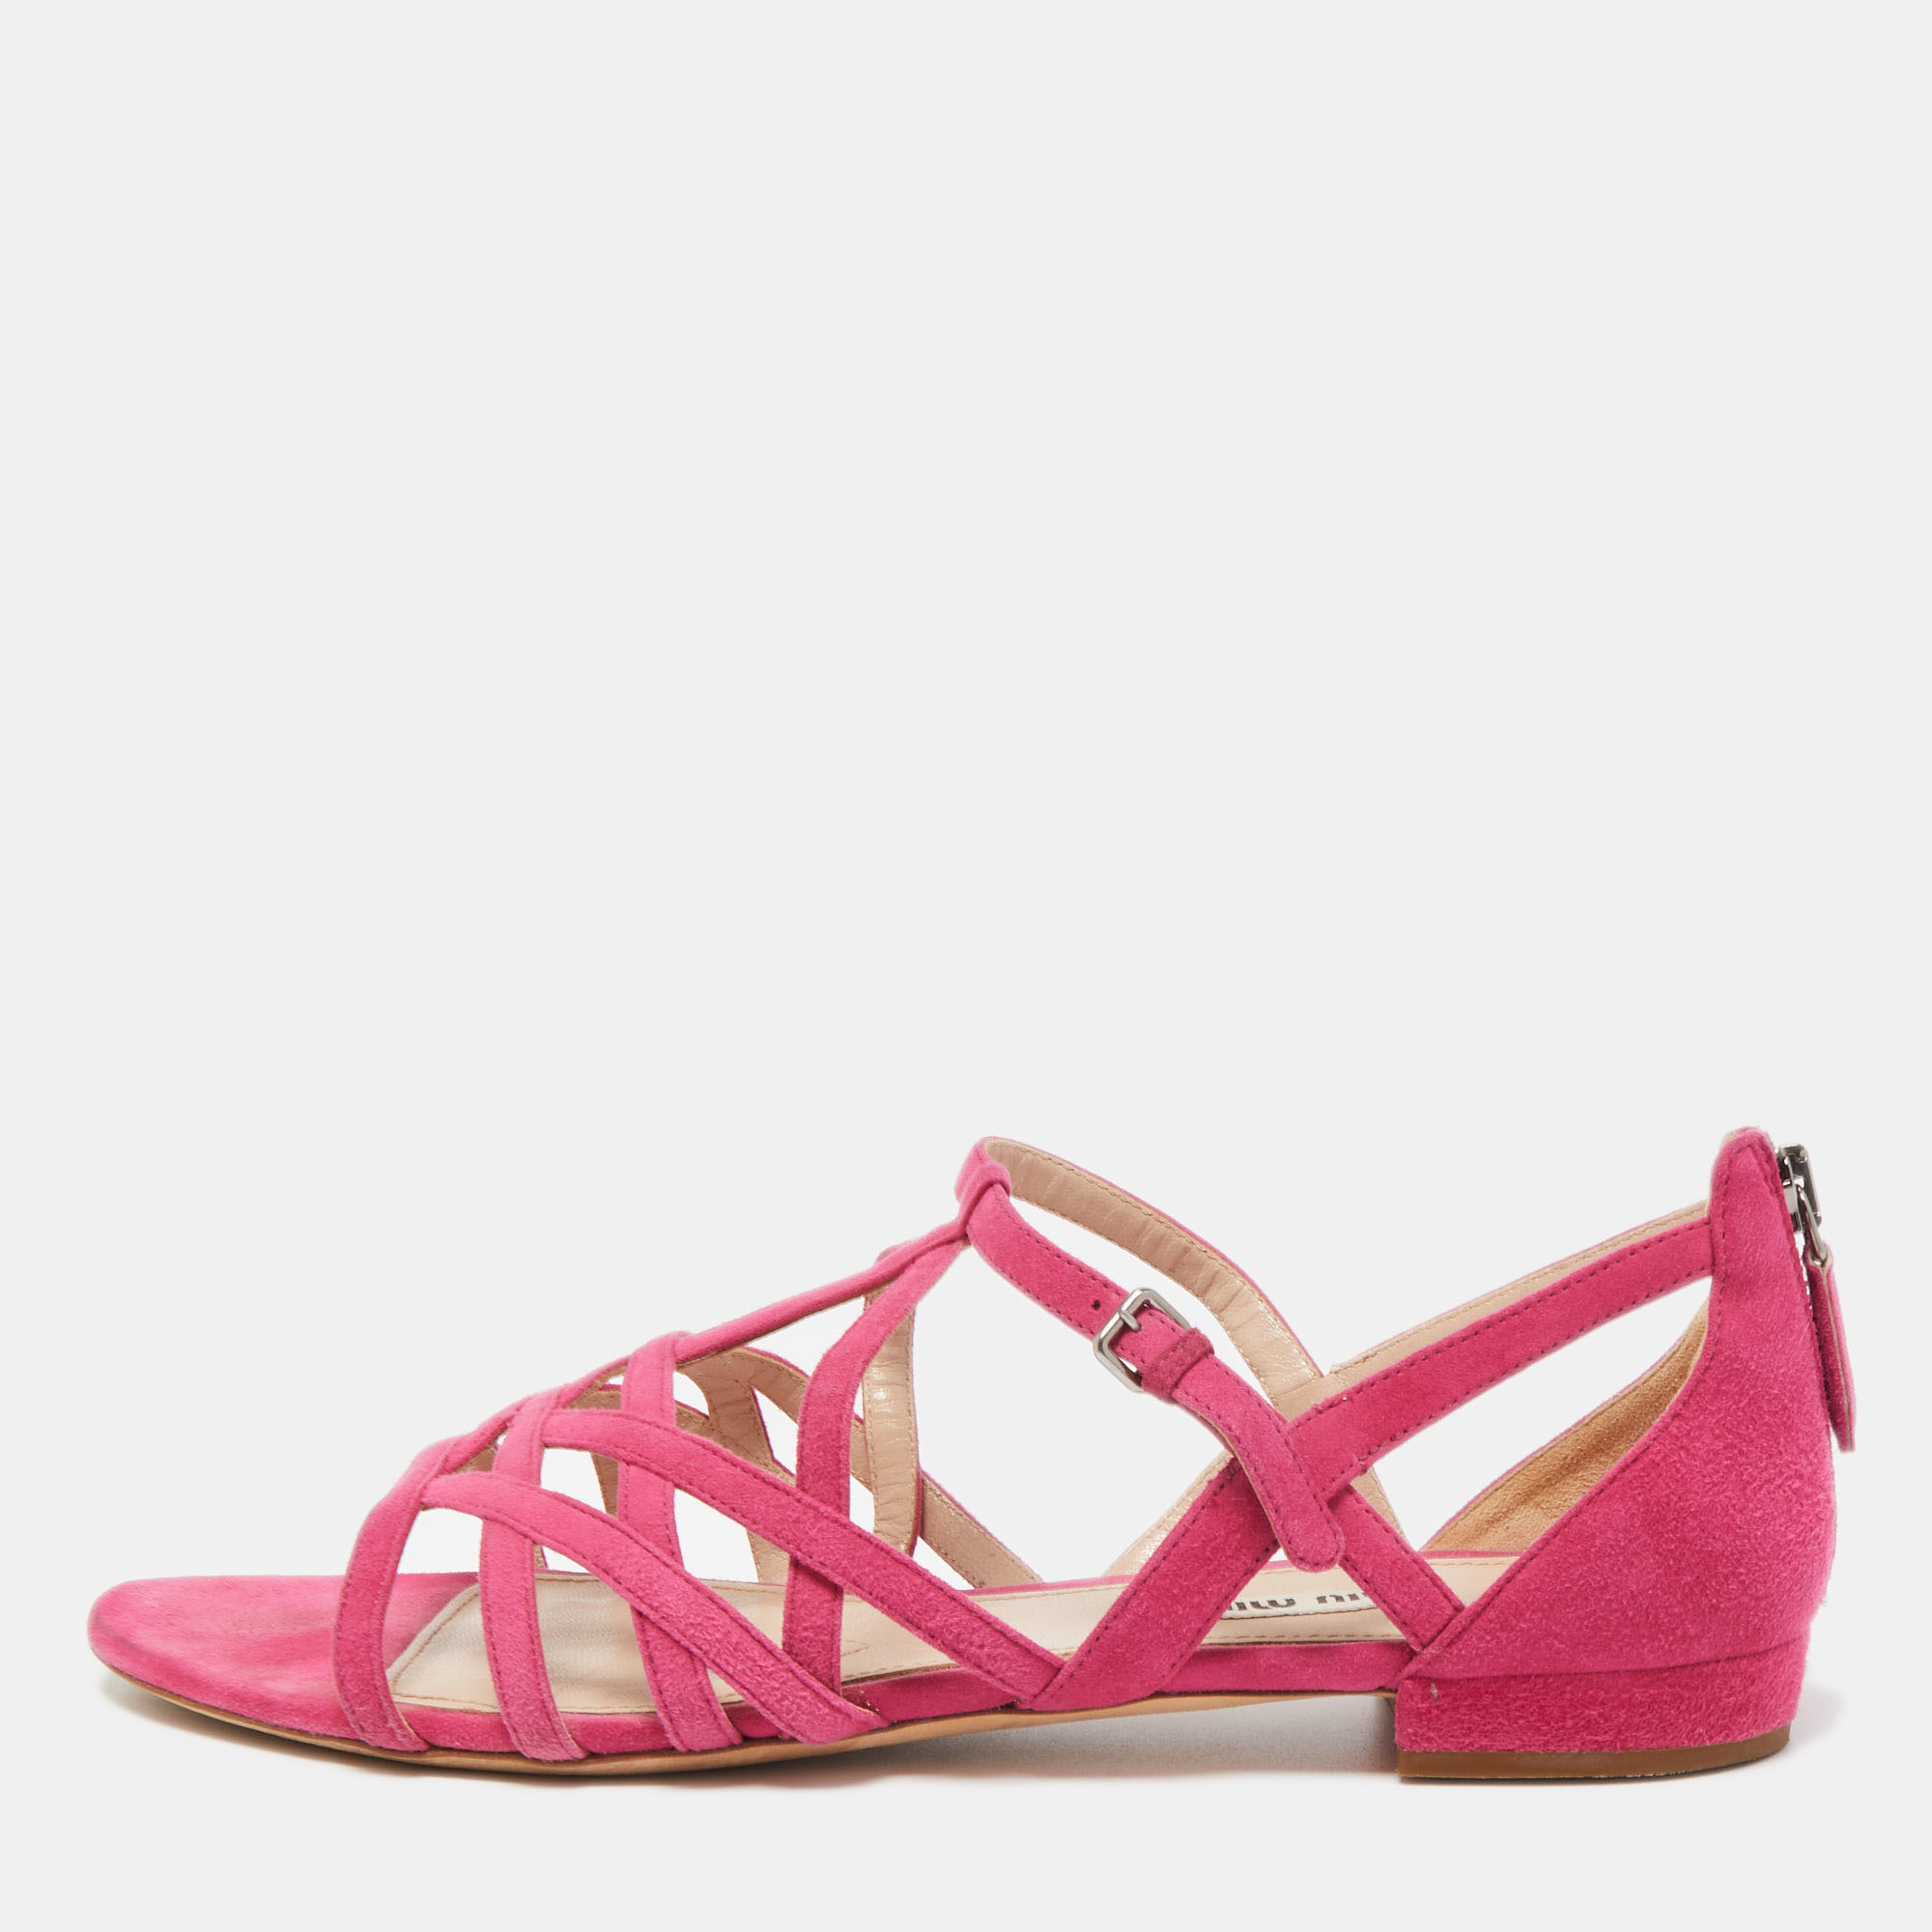 Miu Miu Pink Suede Strappy Flat Sandals Size 39.5